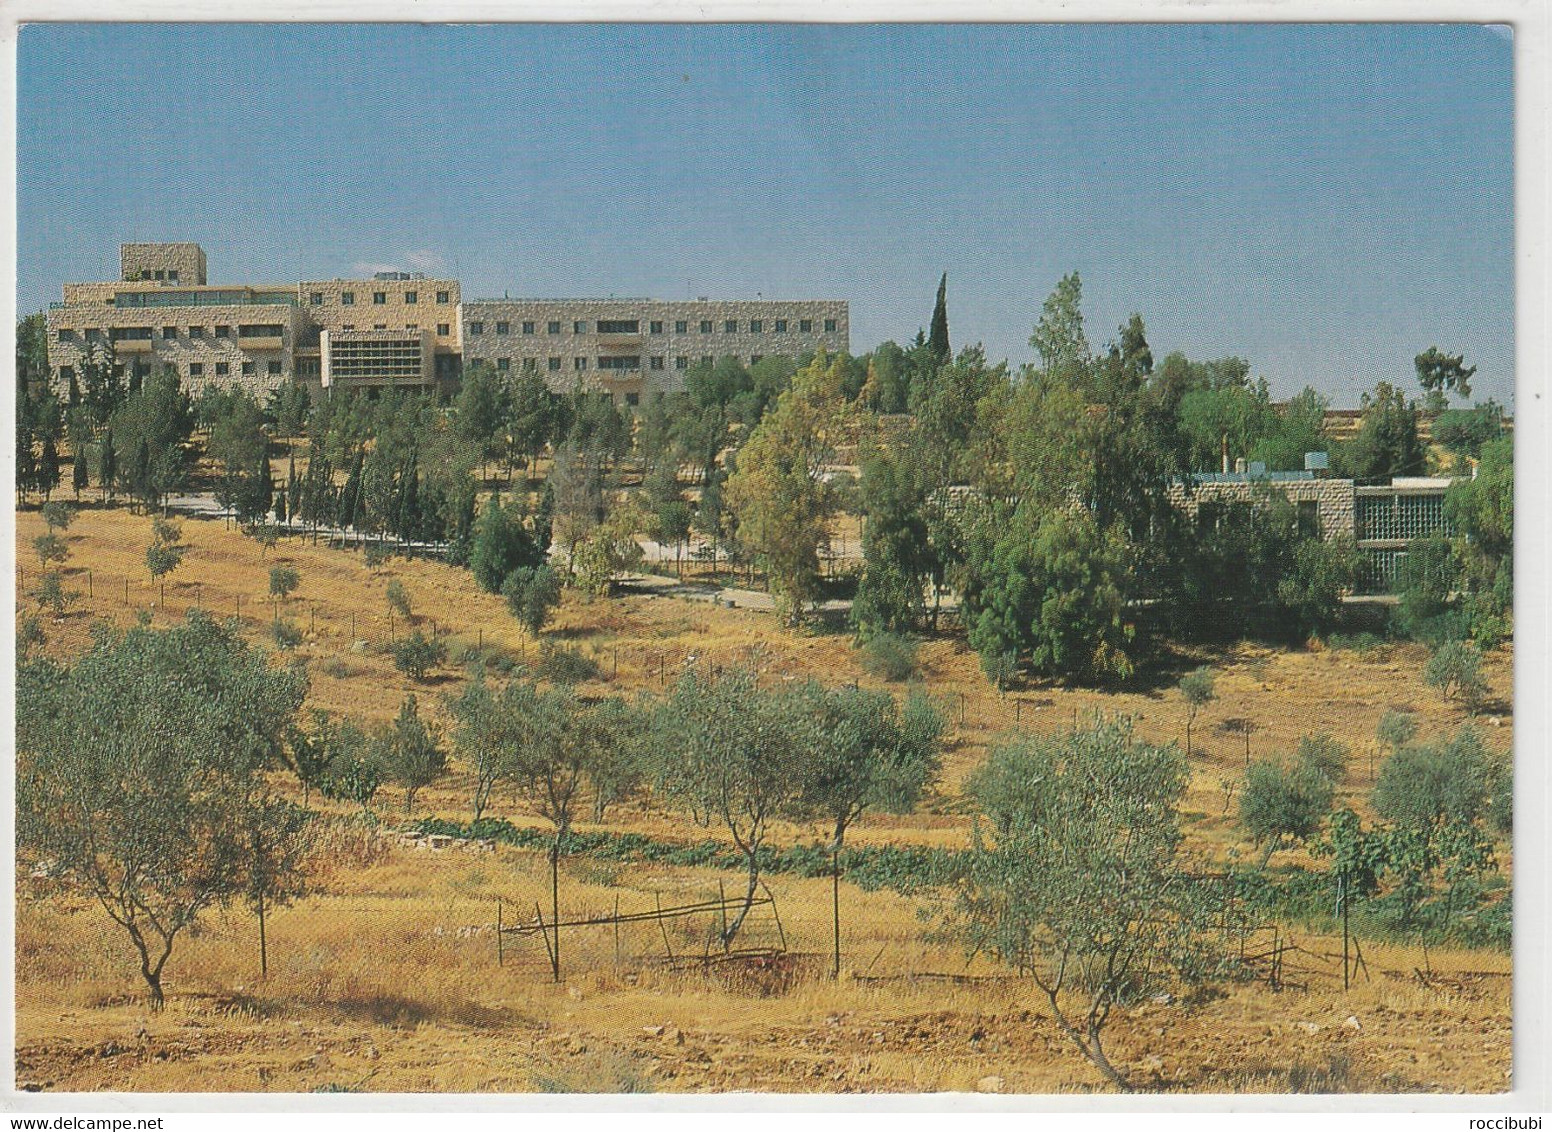 Amman, Deutsche Schule - Jordanie